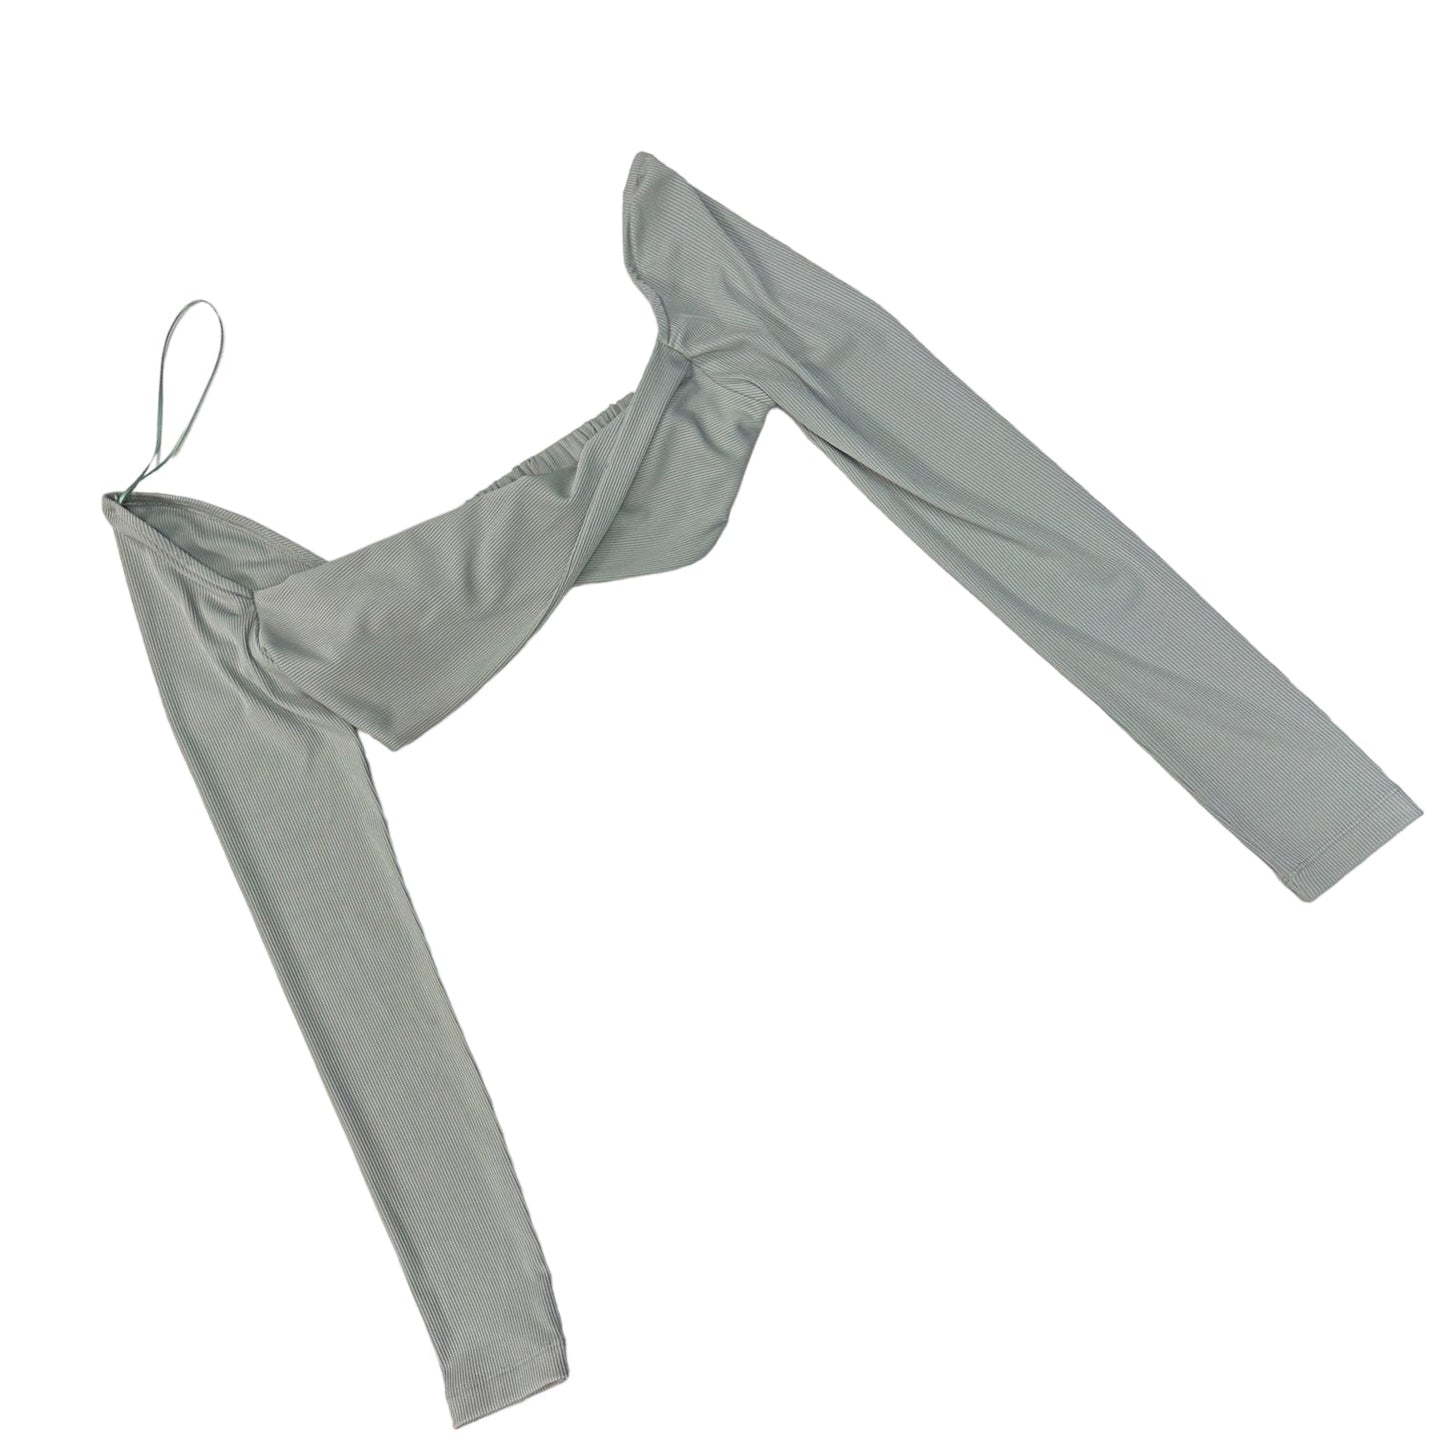 Pants Set 2pc By Clothes Mentor  Size: L